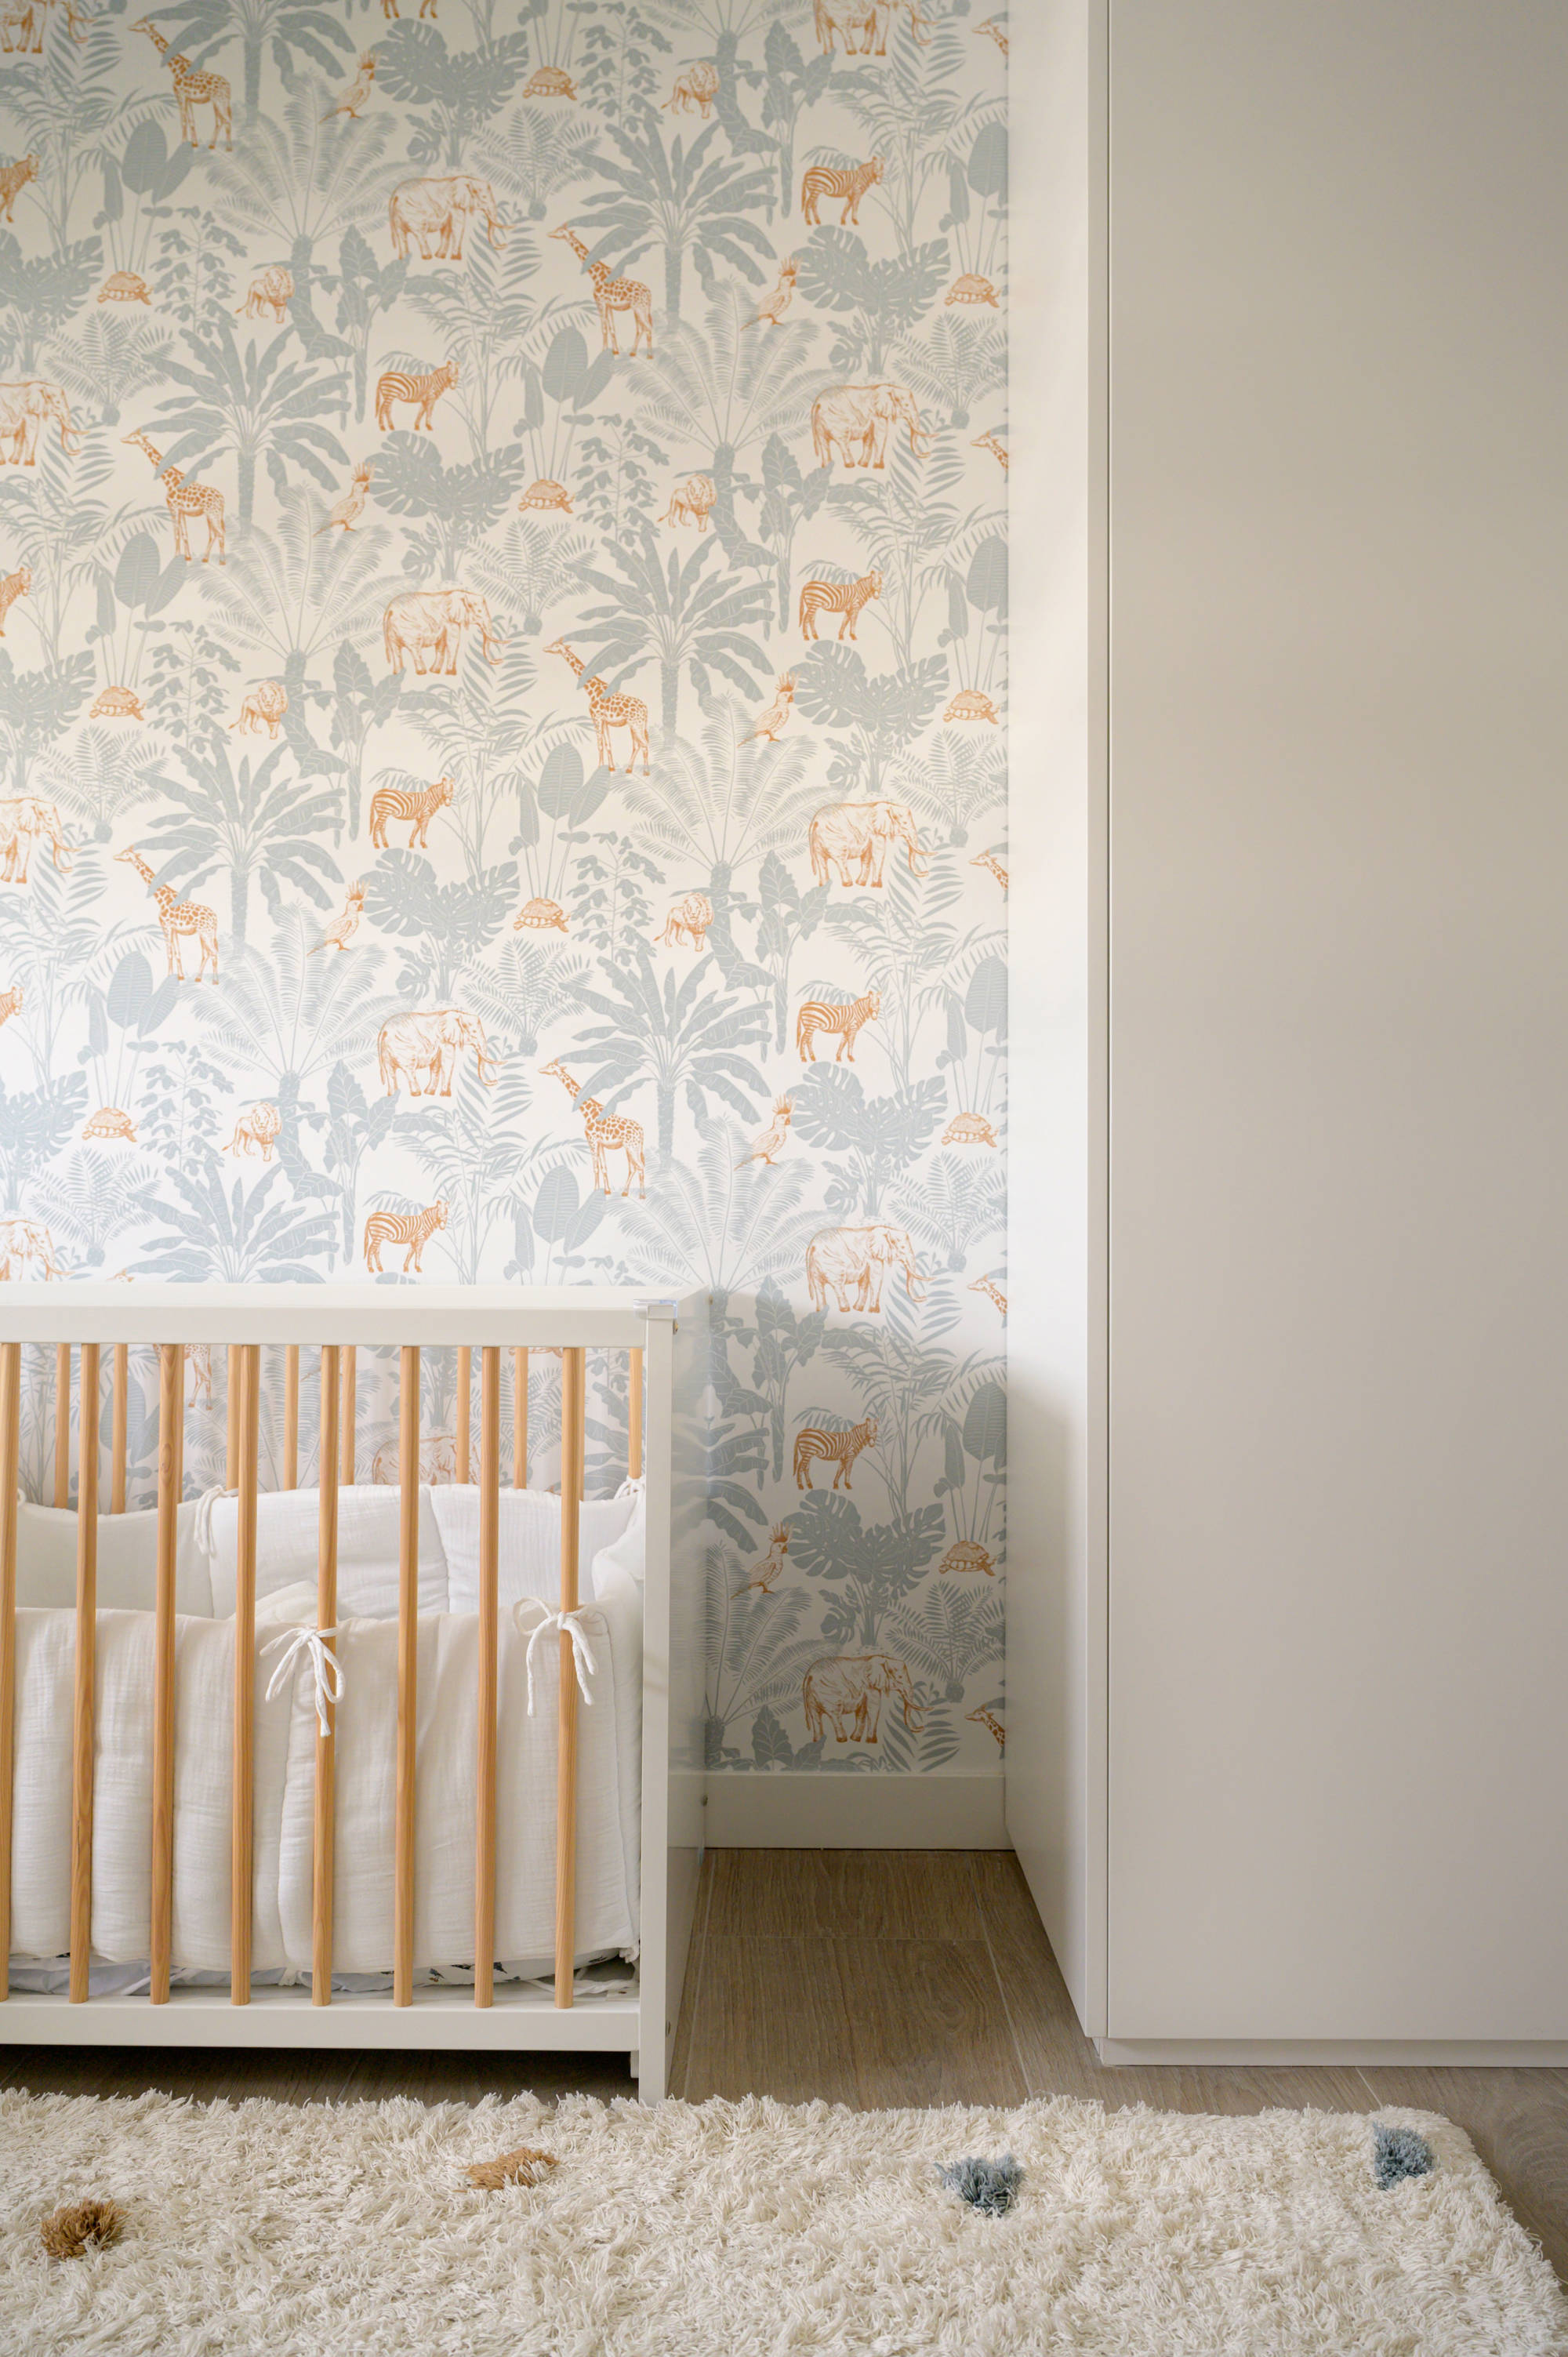 Dormitorio infantil con papel pintado en pared.